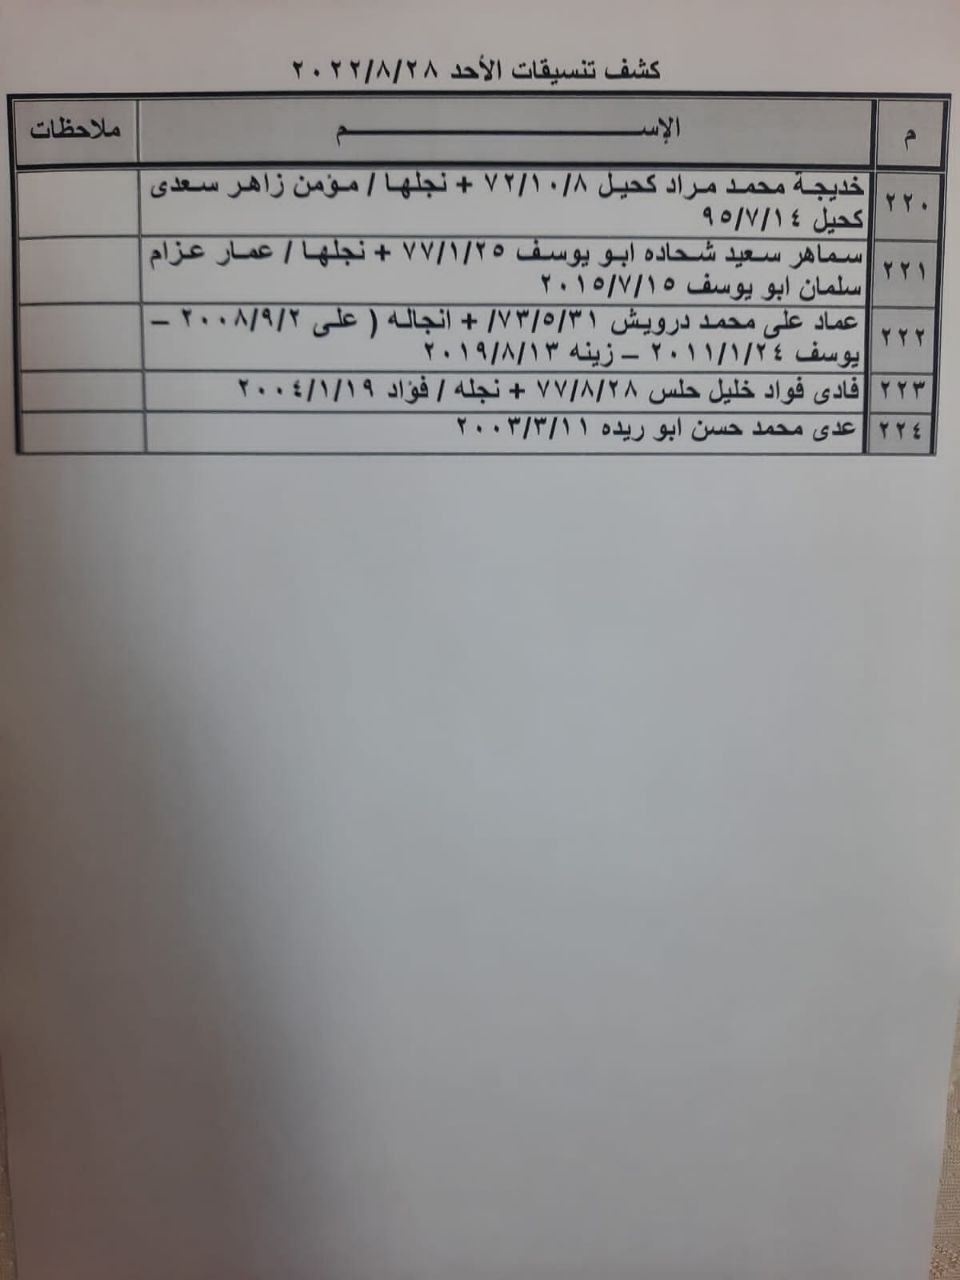 بالأسماء: داخلية غزة تنشر "كشف تنسيقات مصرية" للسفر عبر معبر رفح الأحد 28 أغسطس 2022